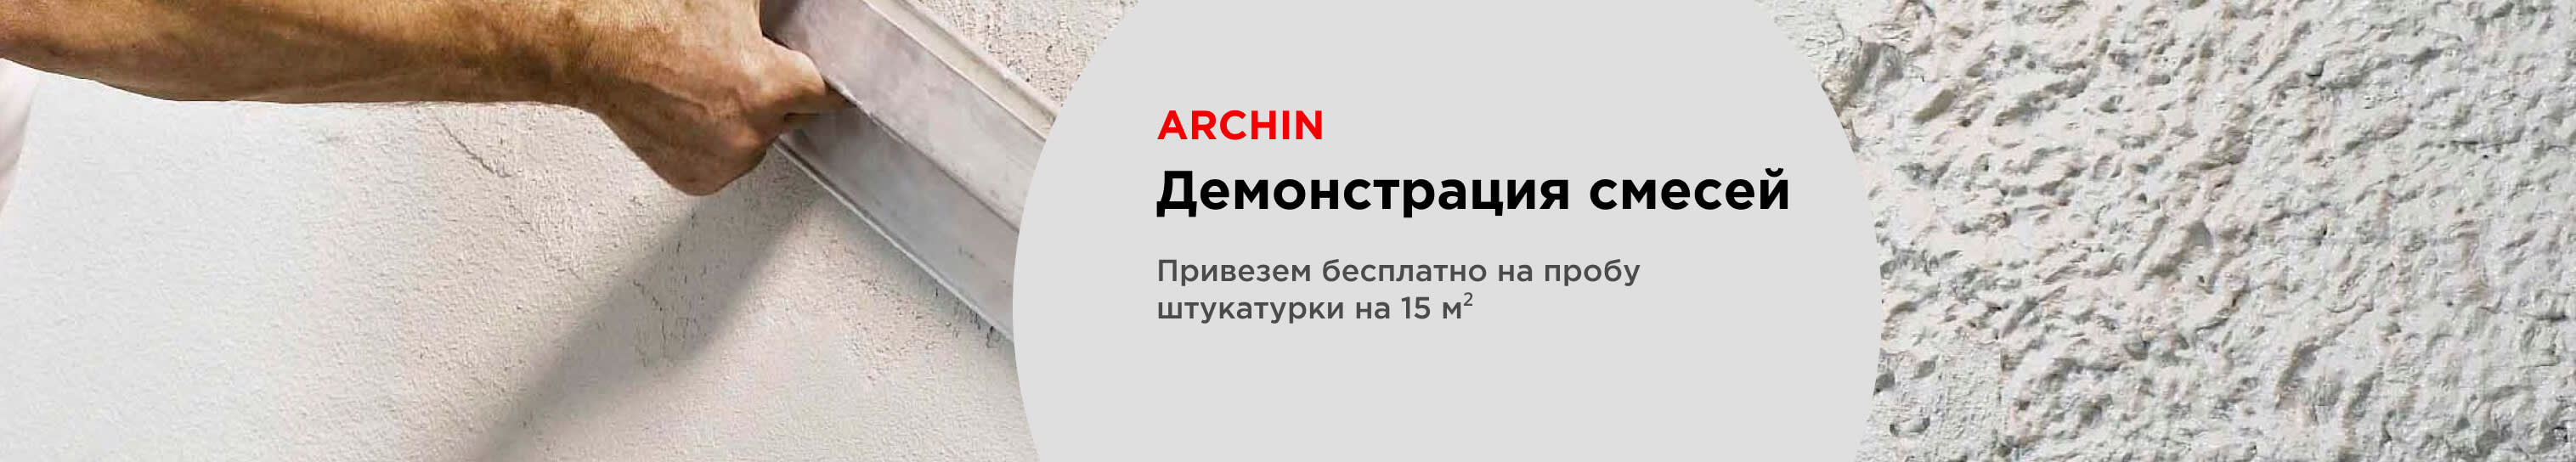 Демонстрация смесей Archin - привезем штукатурки на 15  м²